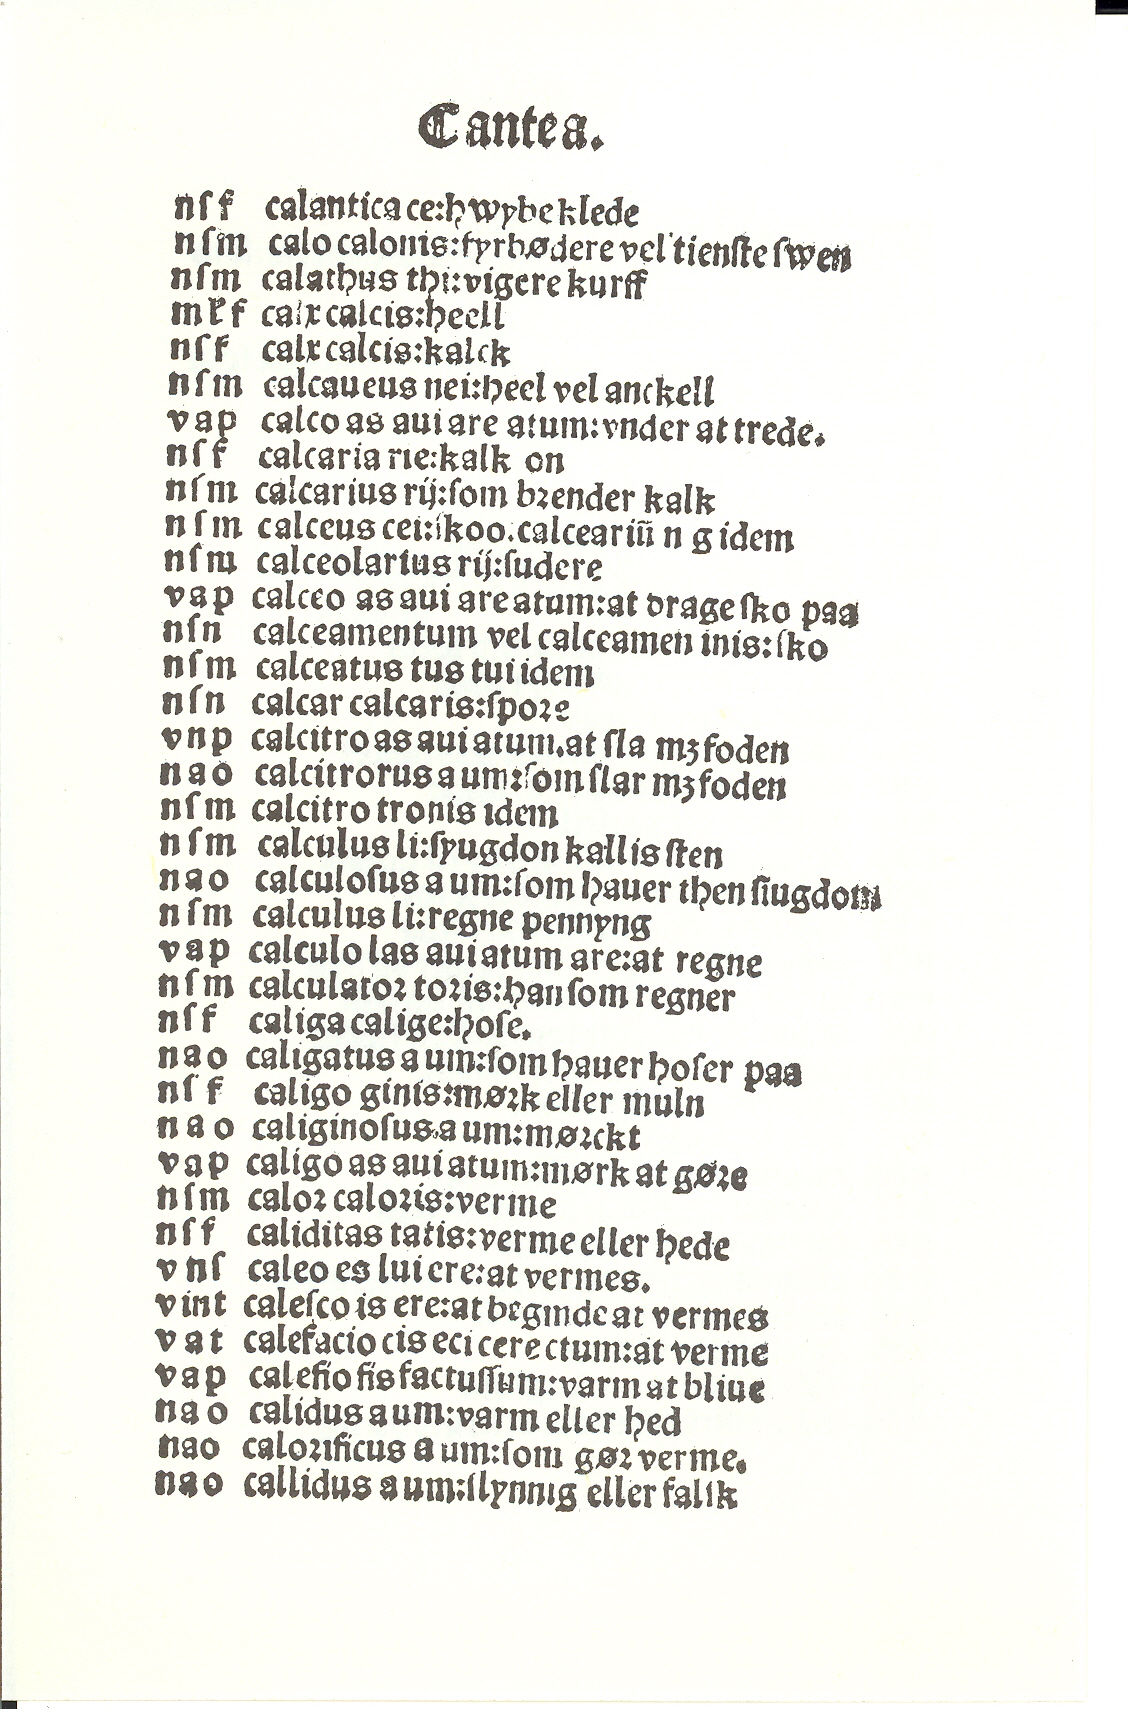 Pedersen 1510, Side: 42